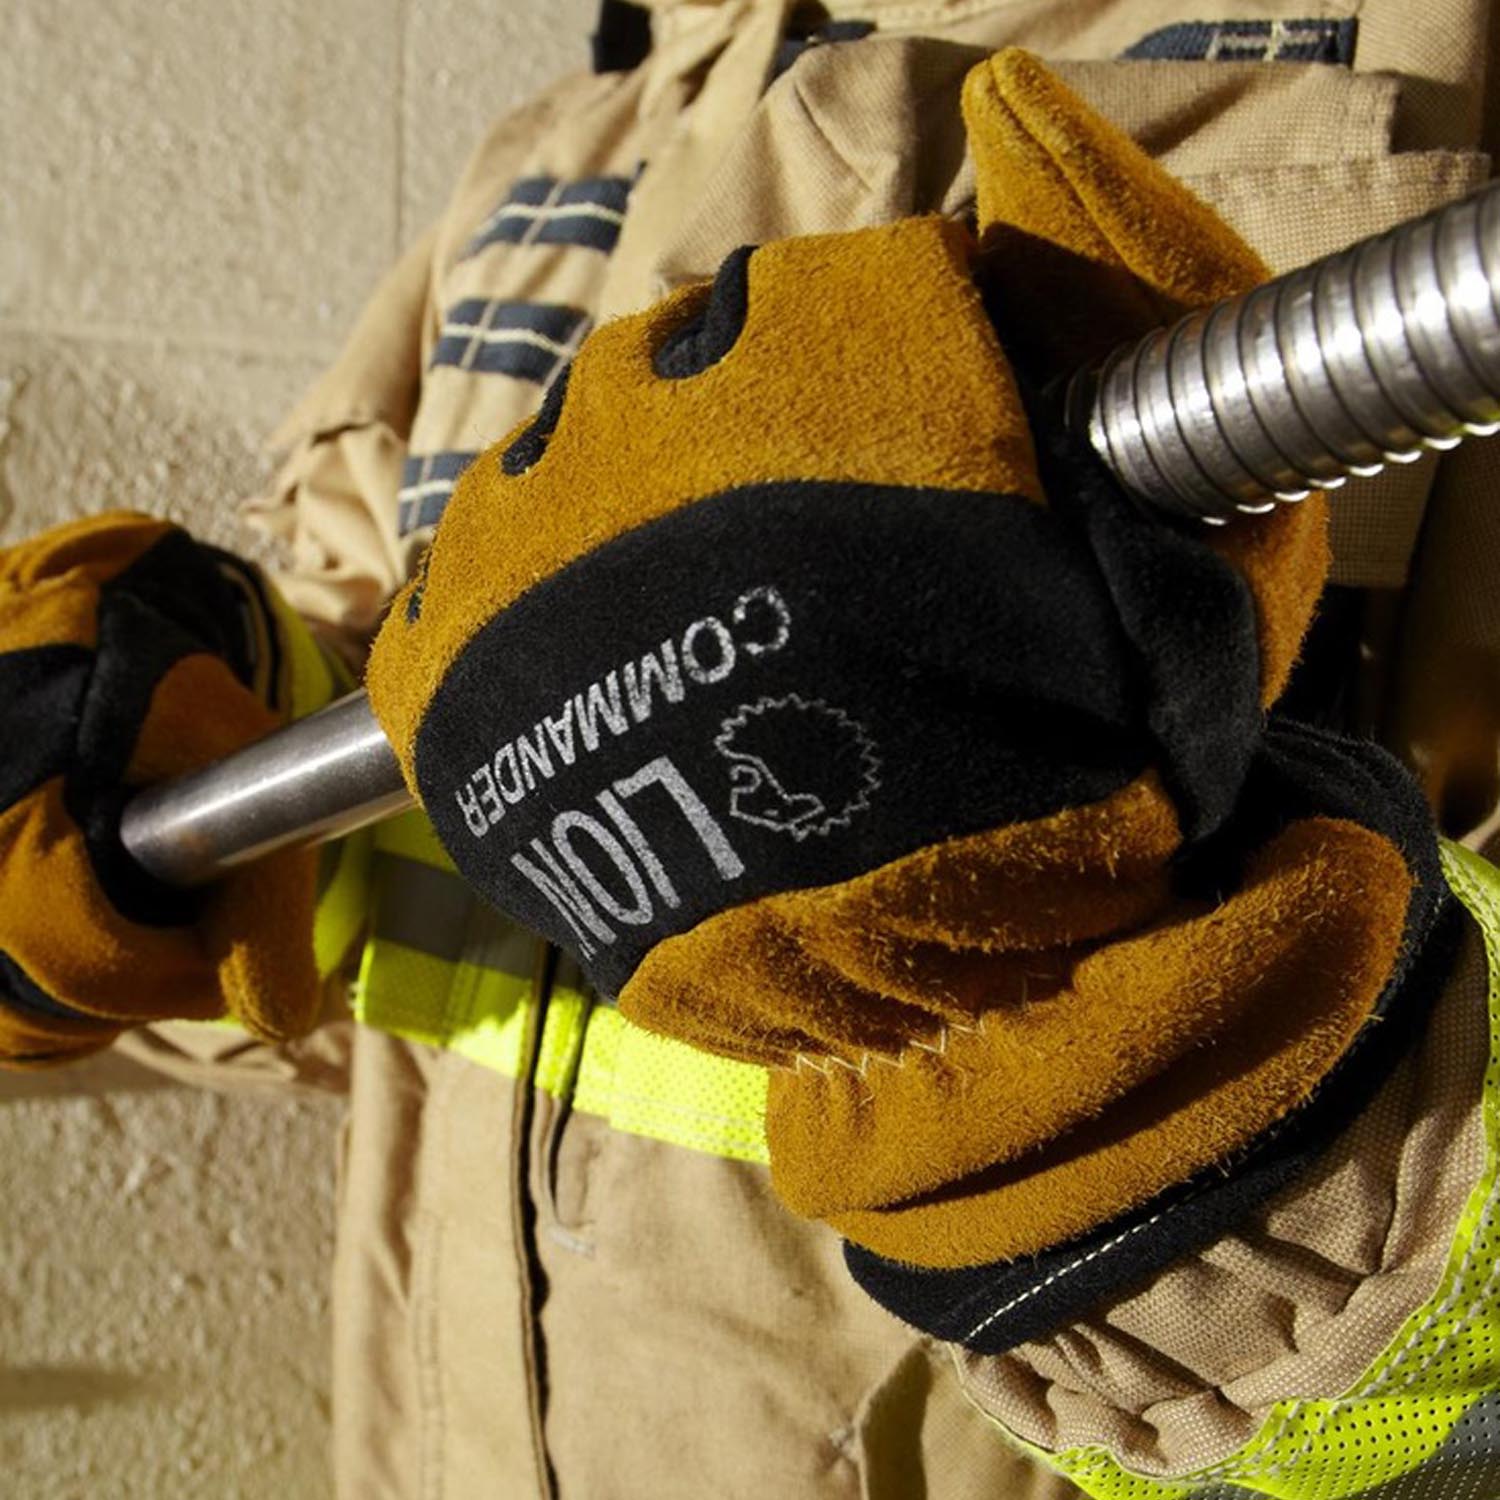 LION Commander NFPA Gauntlet Firefighting Gloves